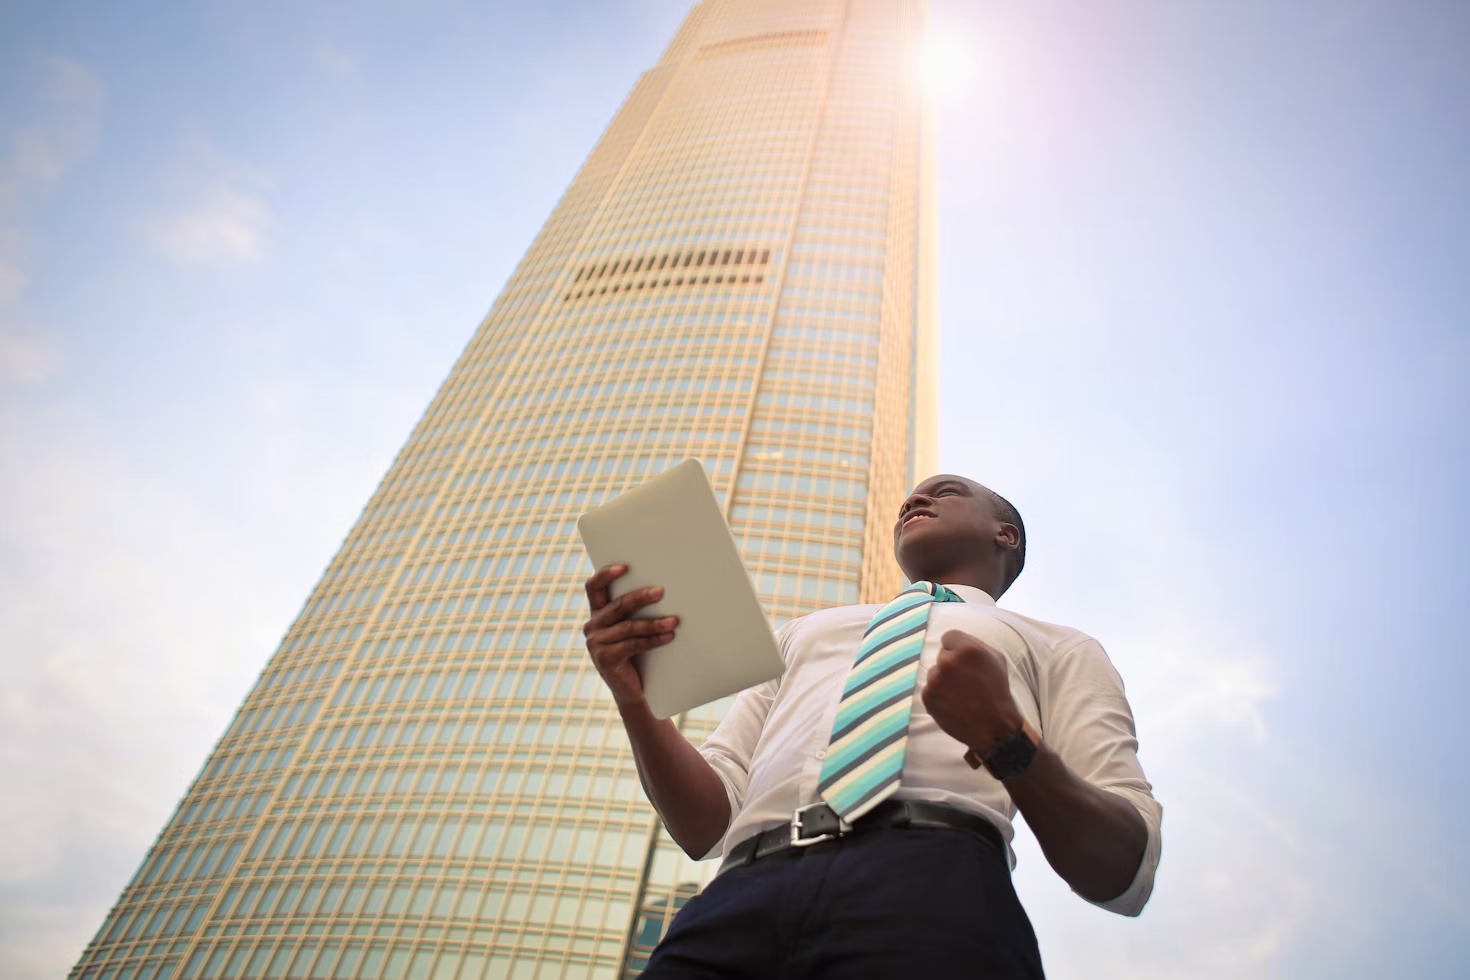 Homme avec une chemise blanche et une cravate rayée bleue grise et jaune tenant un document devant un gratte-ciel